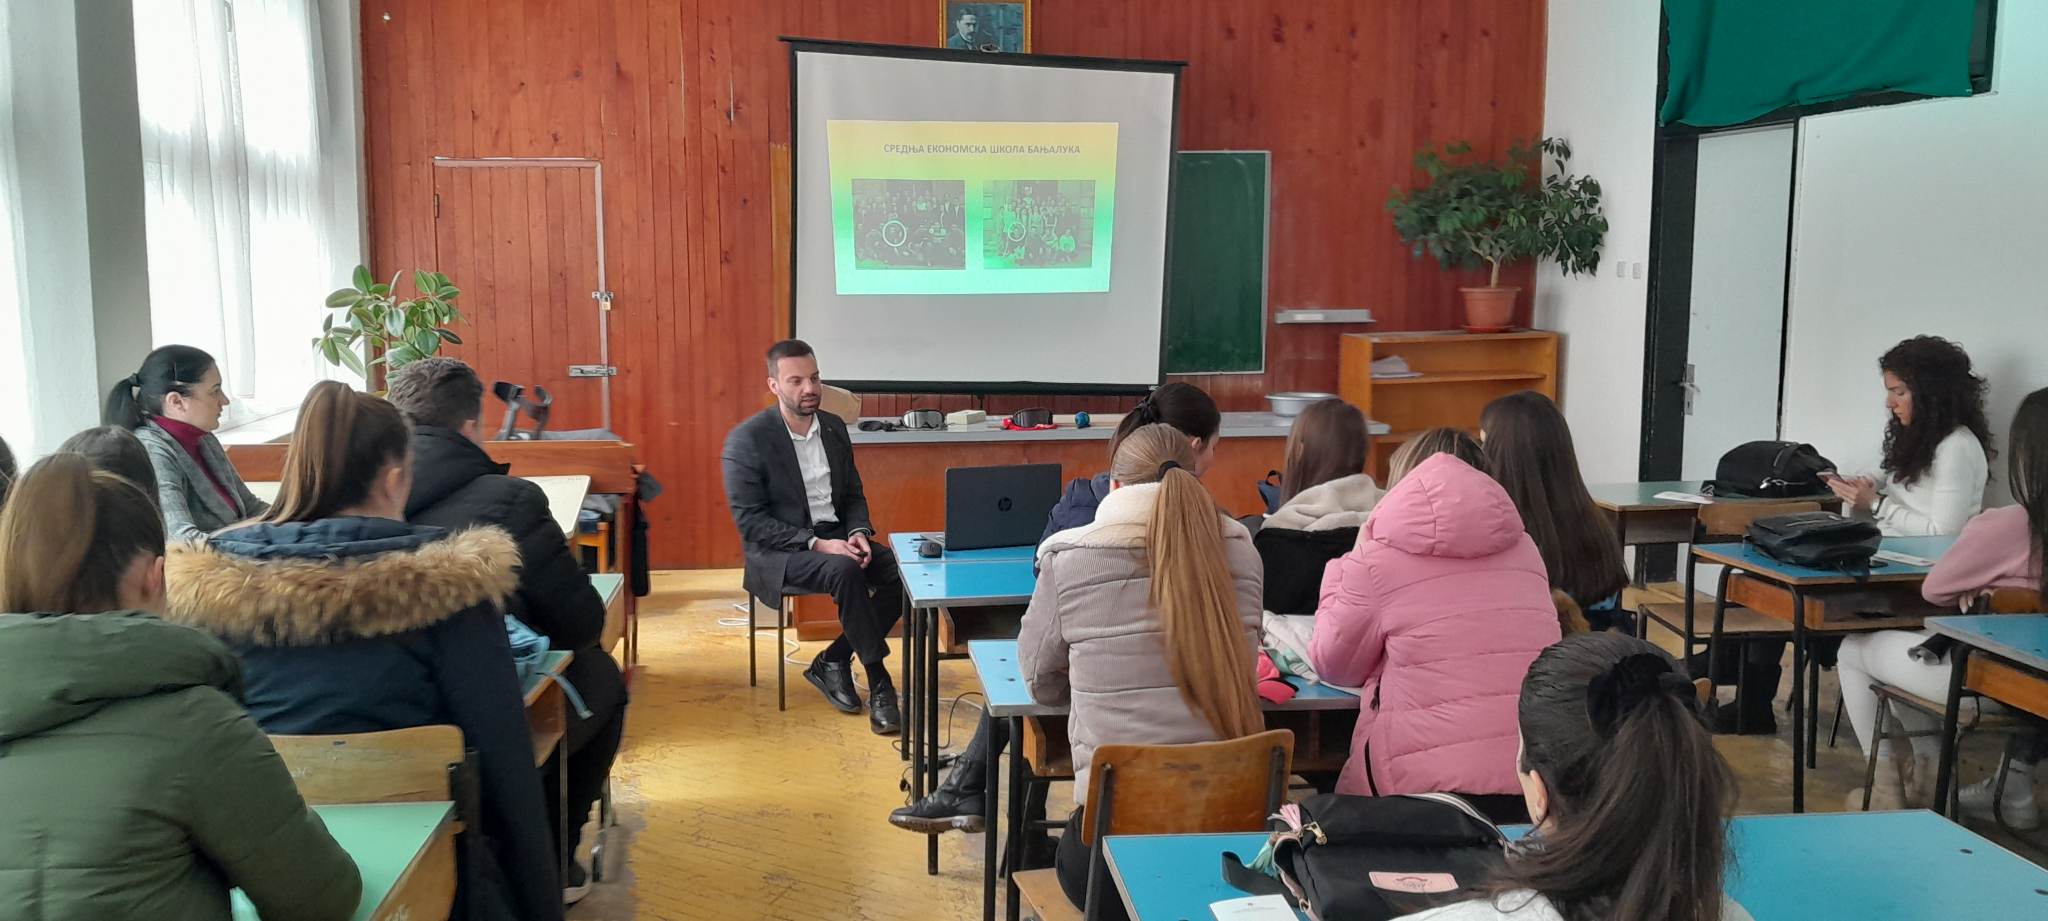 Предавање на тему „Безбједност младих у саобраћају“ одржано у средњошколском центру „Перо Слијепчевић“ у Општини Гацко